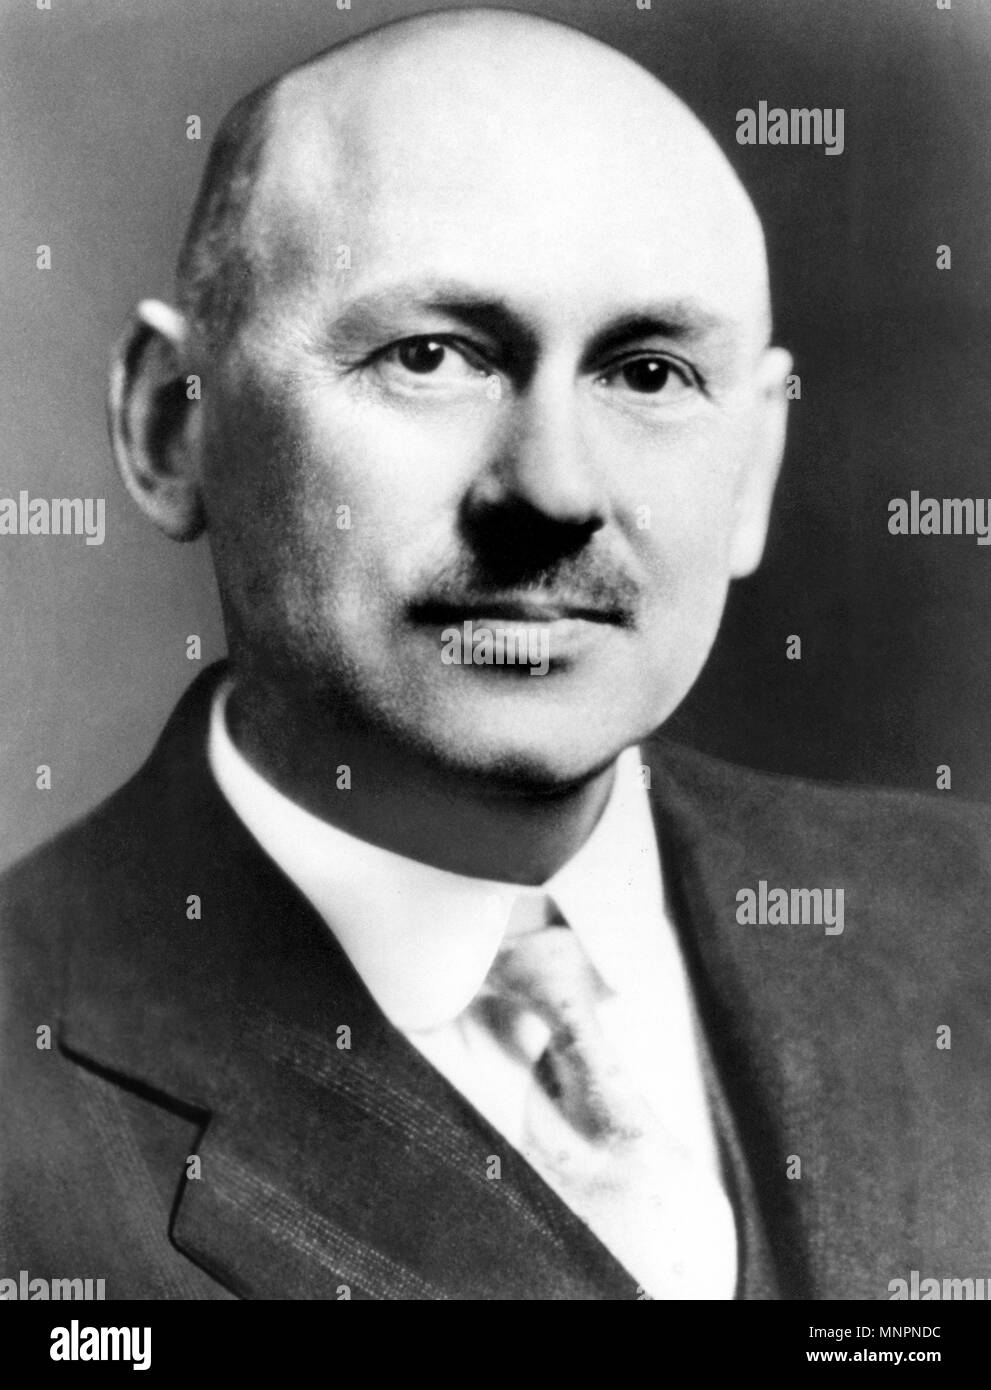 ROBERT GODDARD (1882-1945), ingeniero estadounidense y pionero diseñador de los cohetes de combustible líquido Foto de stock